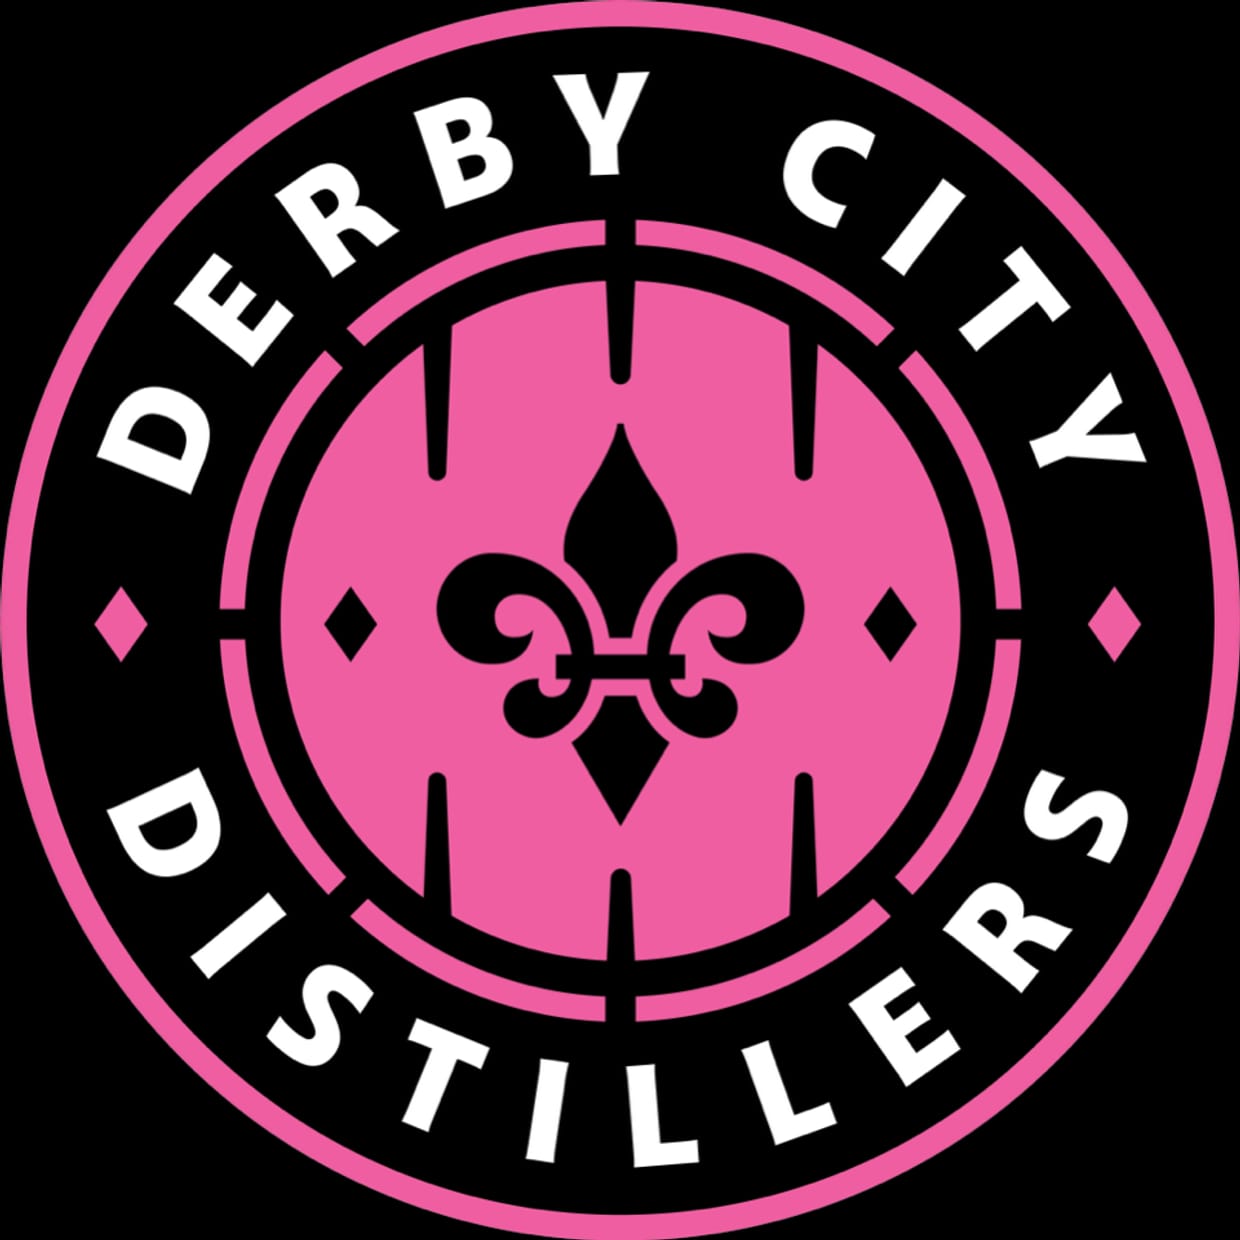 Derby City Distillers v. Medora Timberjacks